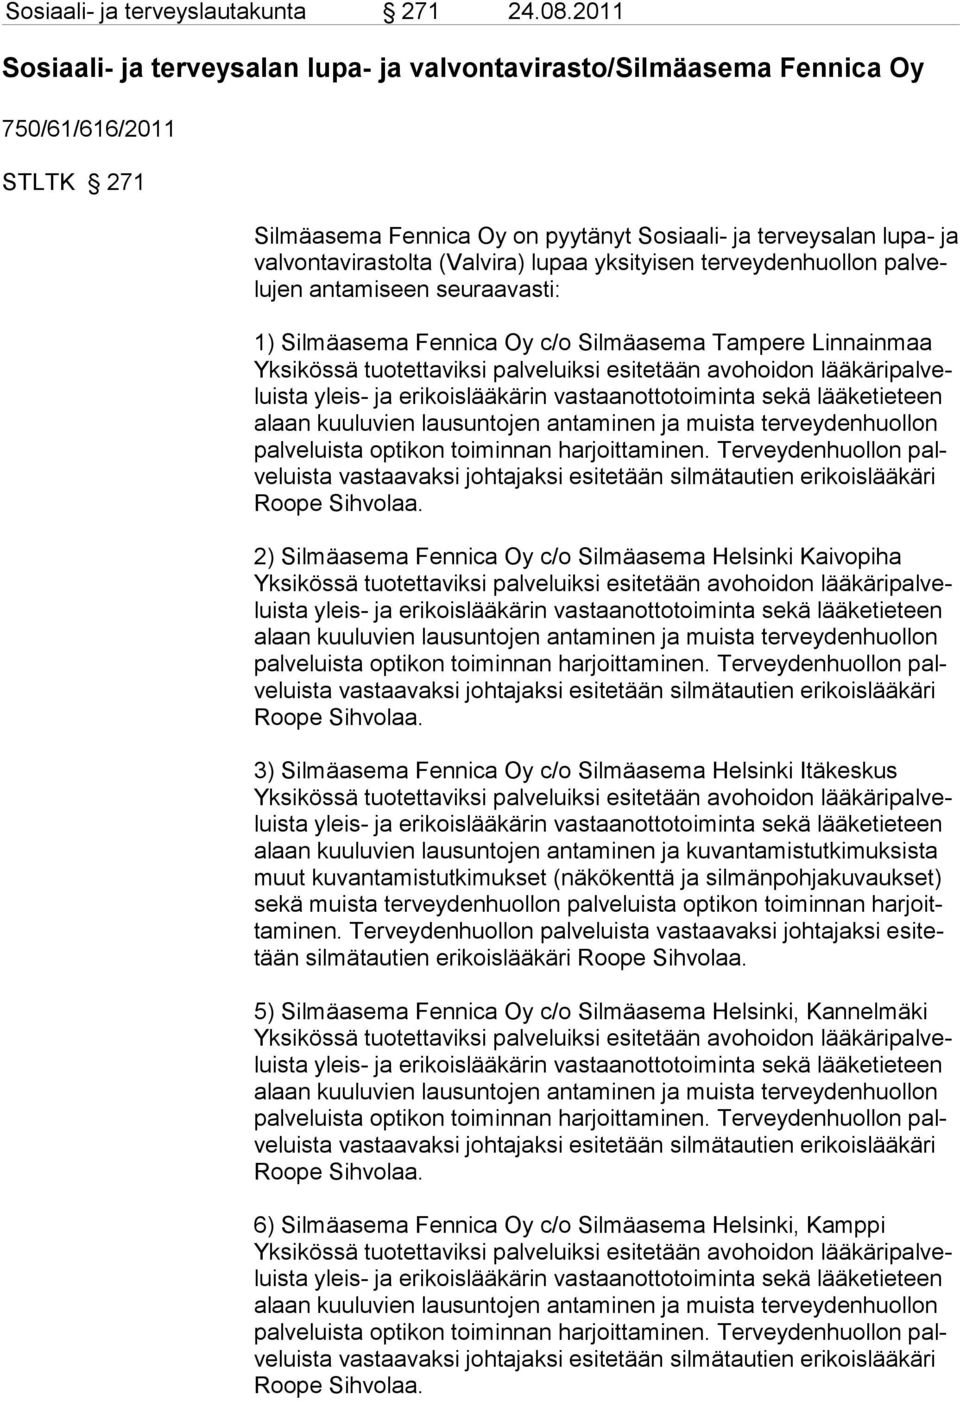 vira) lupaa yksityisen terveydenhuol lon palvelujen antamiseen seuraavasti: 1) Silmäasema Fennica Oy c/o Silmäasema Tampere Linnainmaa palve luista vastaa vaksi johtajaksi esitetään silmätautien